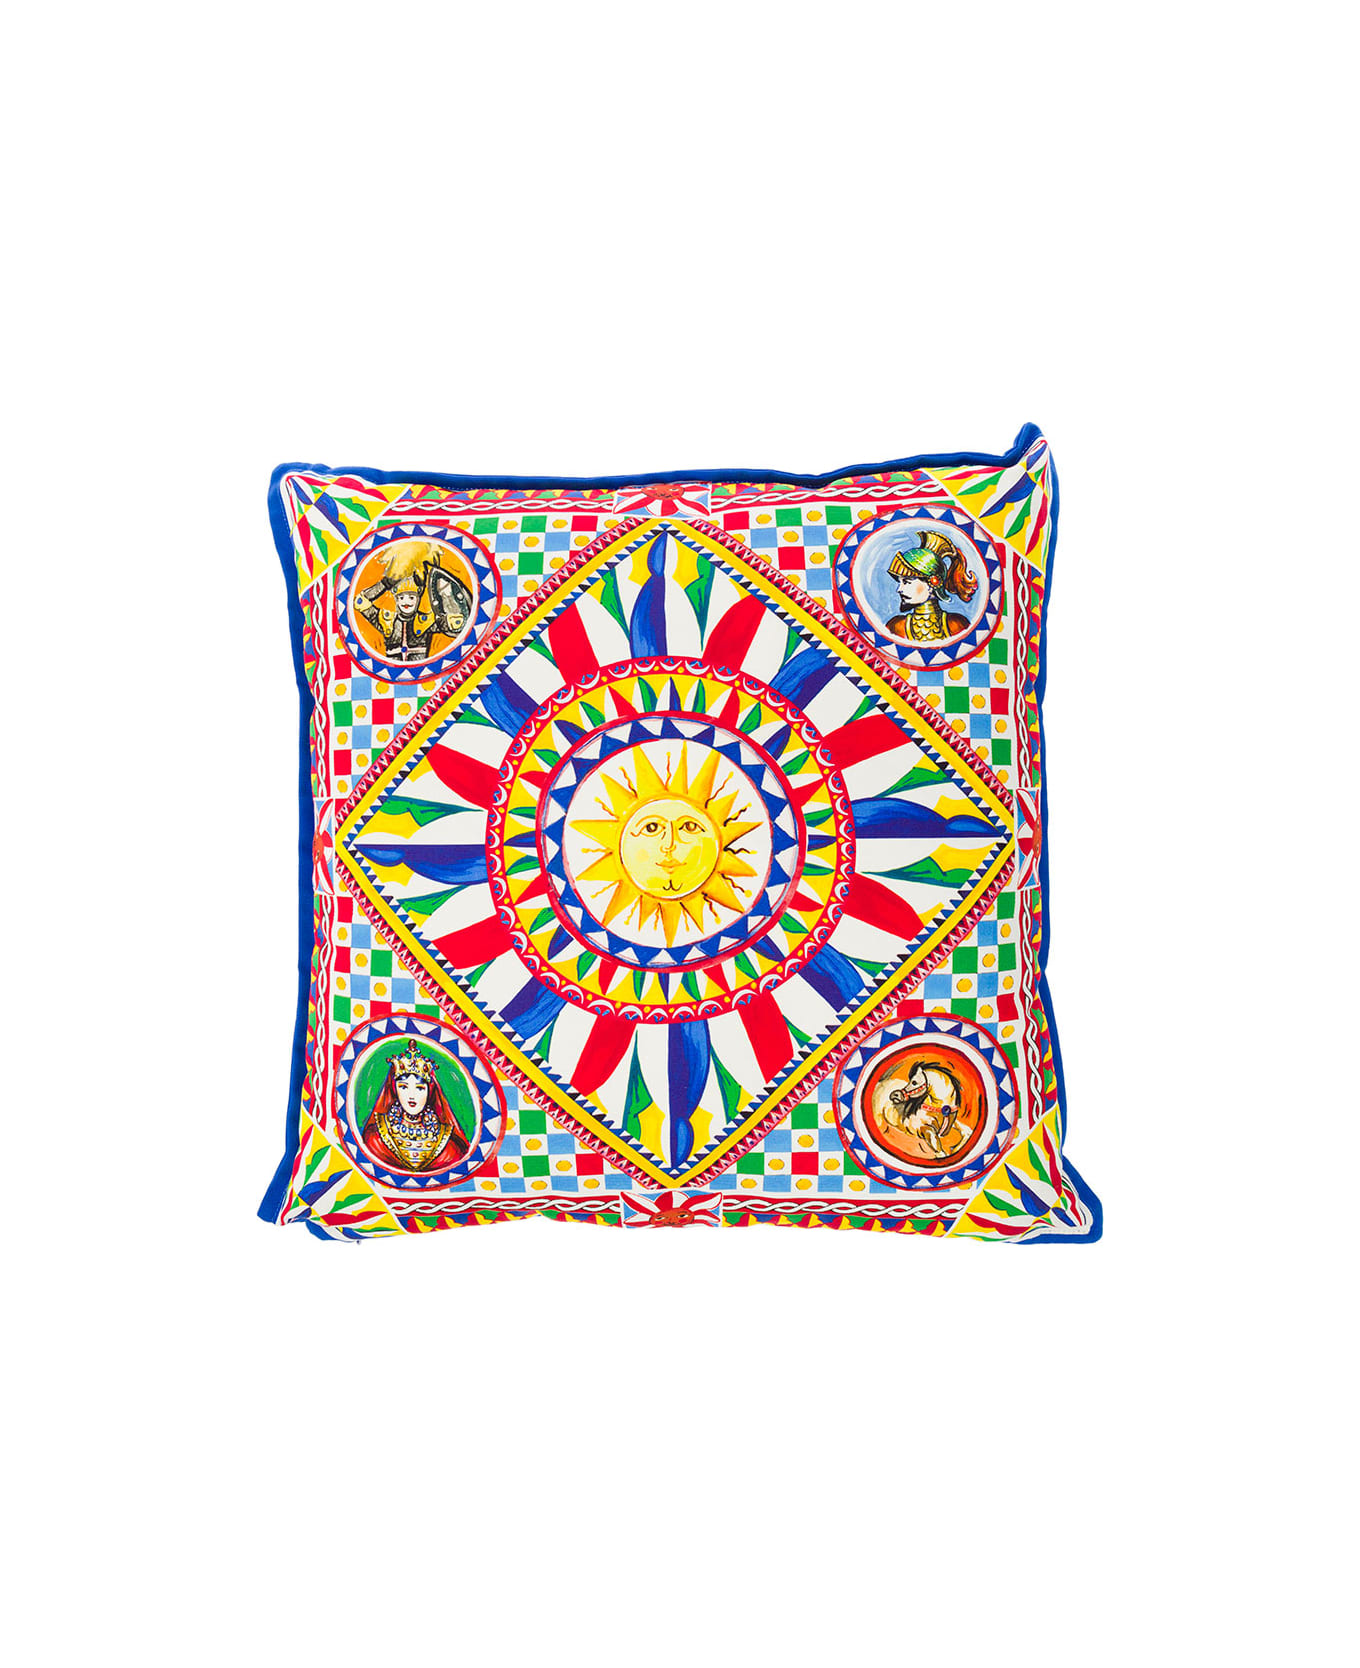 Dolce & Gabbana Multicolor Small Cushion With Carretto Foulard Print In Cotton Dolce & Gabbana - Multicolor